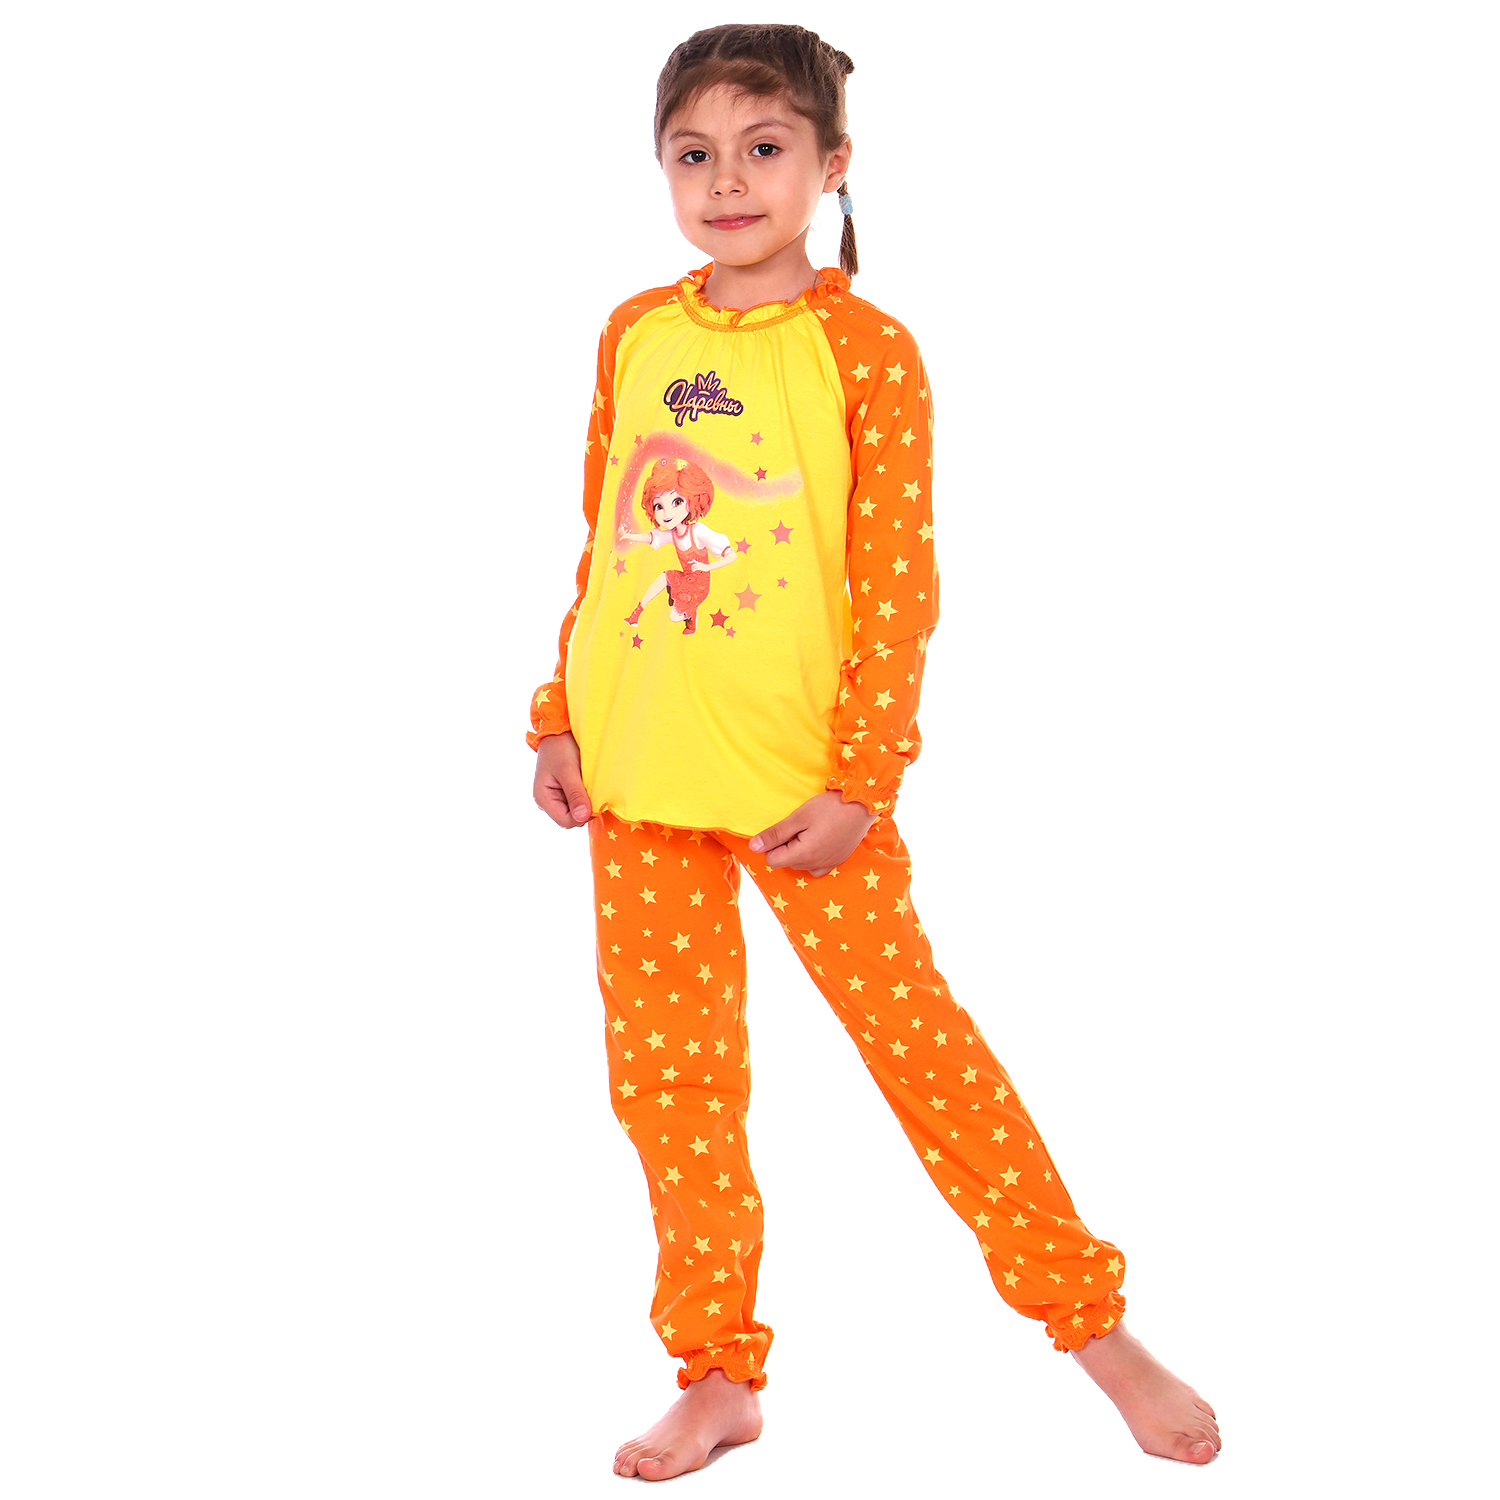 Пижама Детская Одежда S0413К/желтый_оранж - фото 4